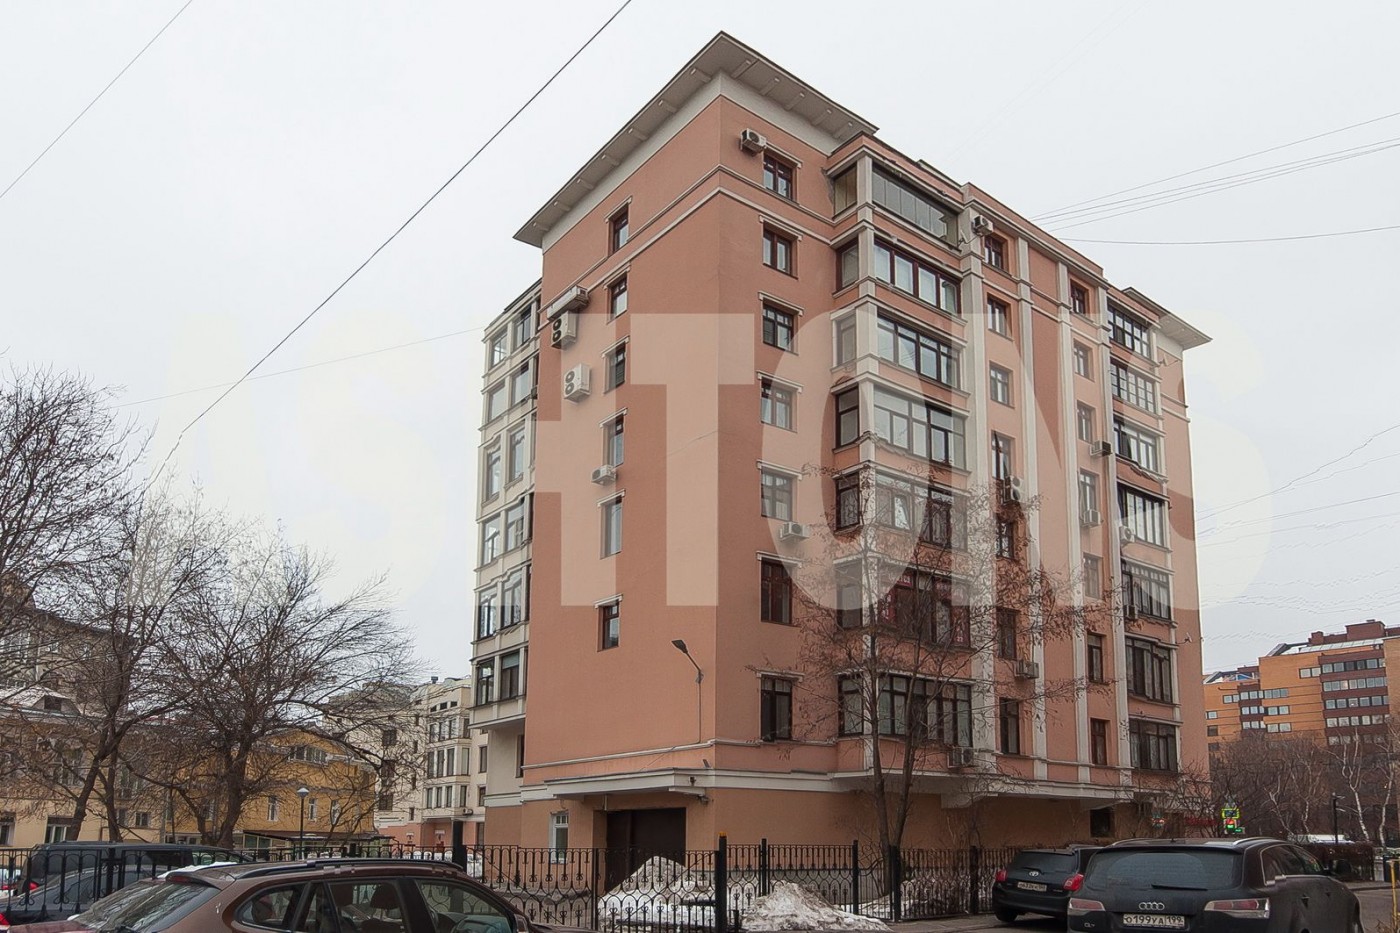 Аренда элитной квартиры в районе Хамовники ashtons.ru Ashtons International Realty